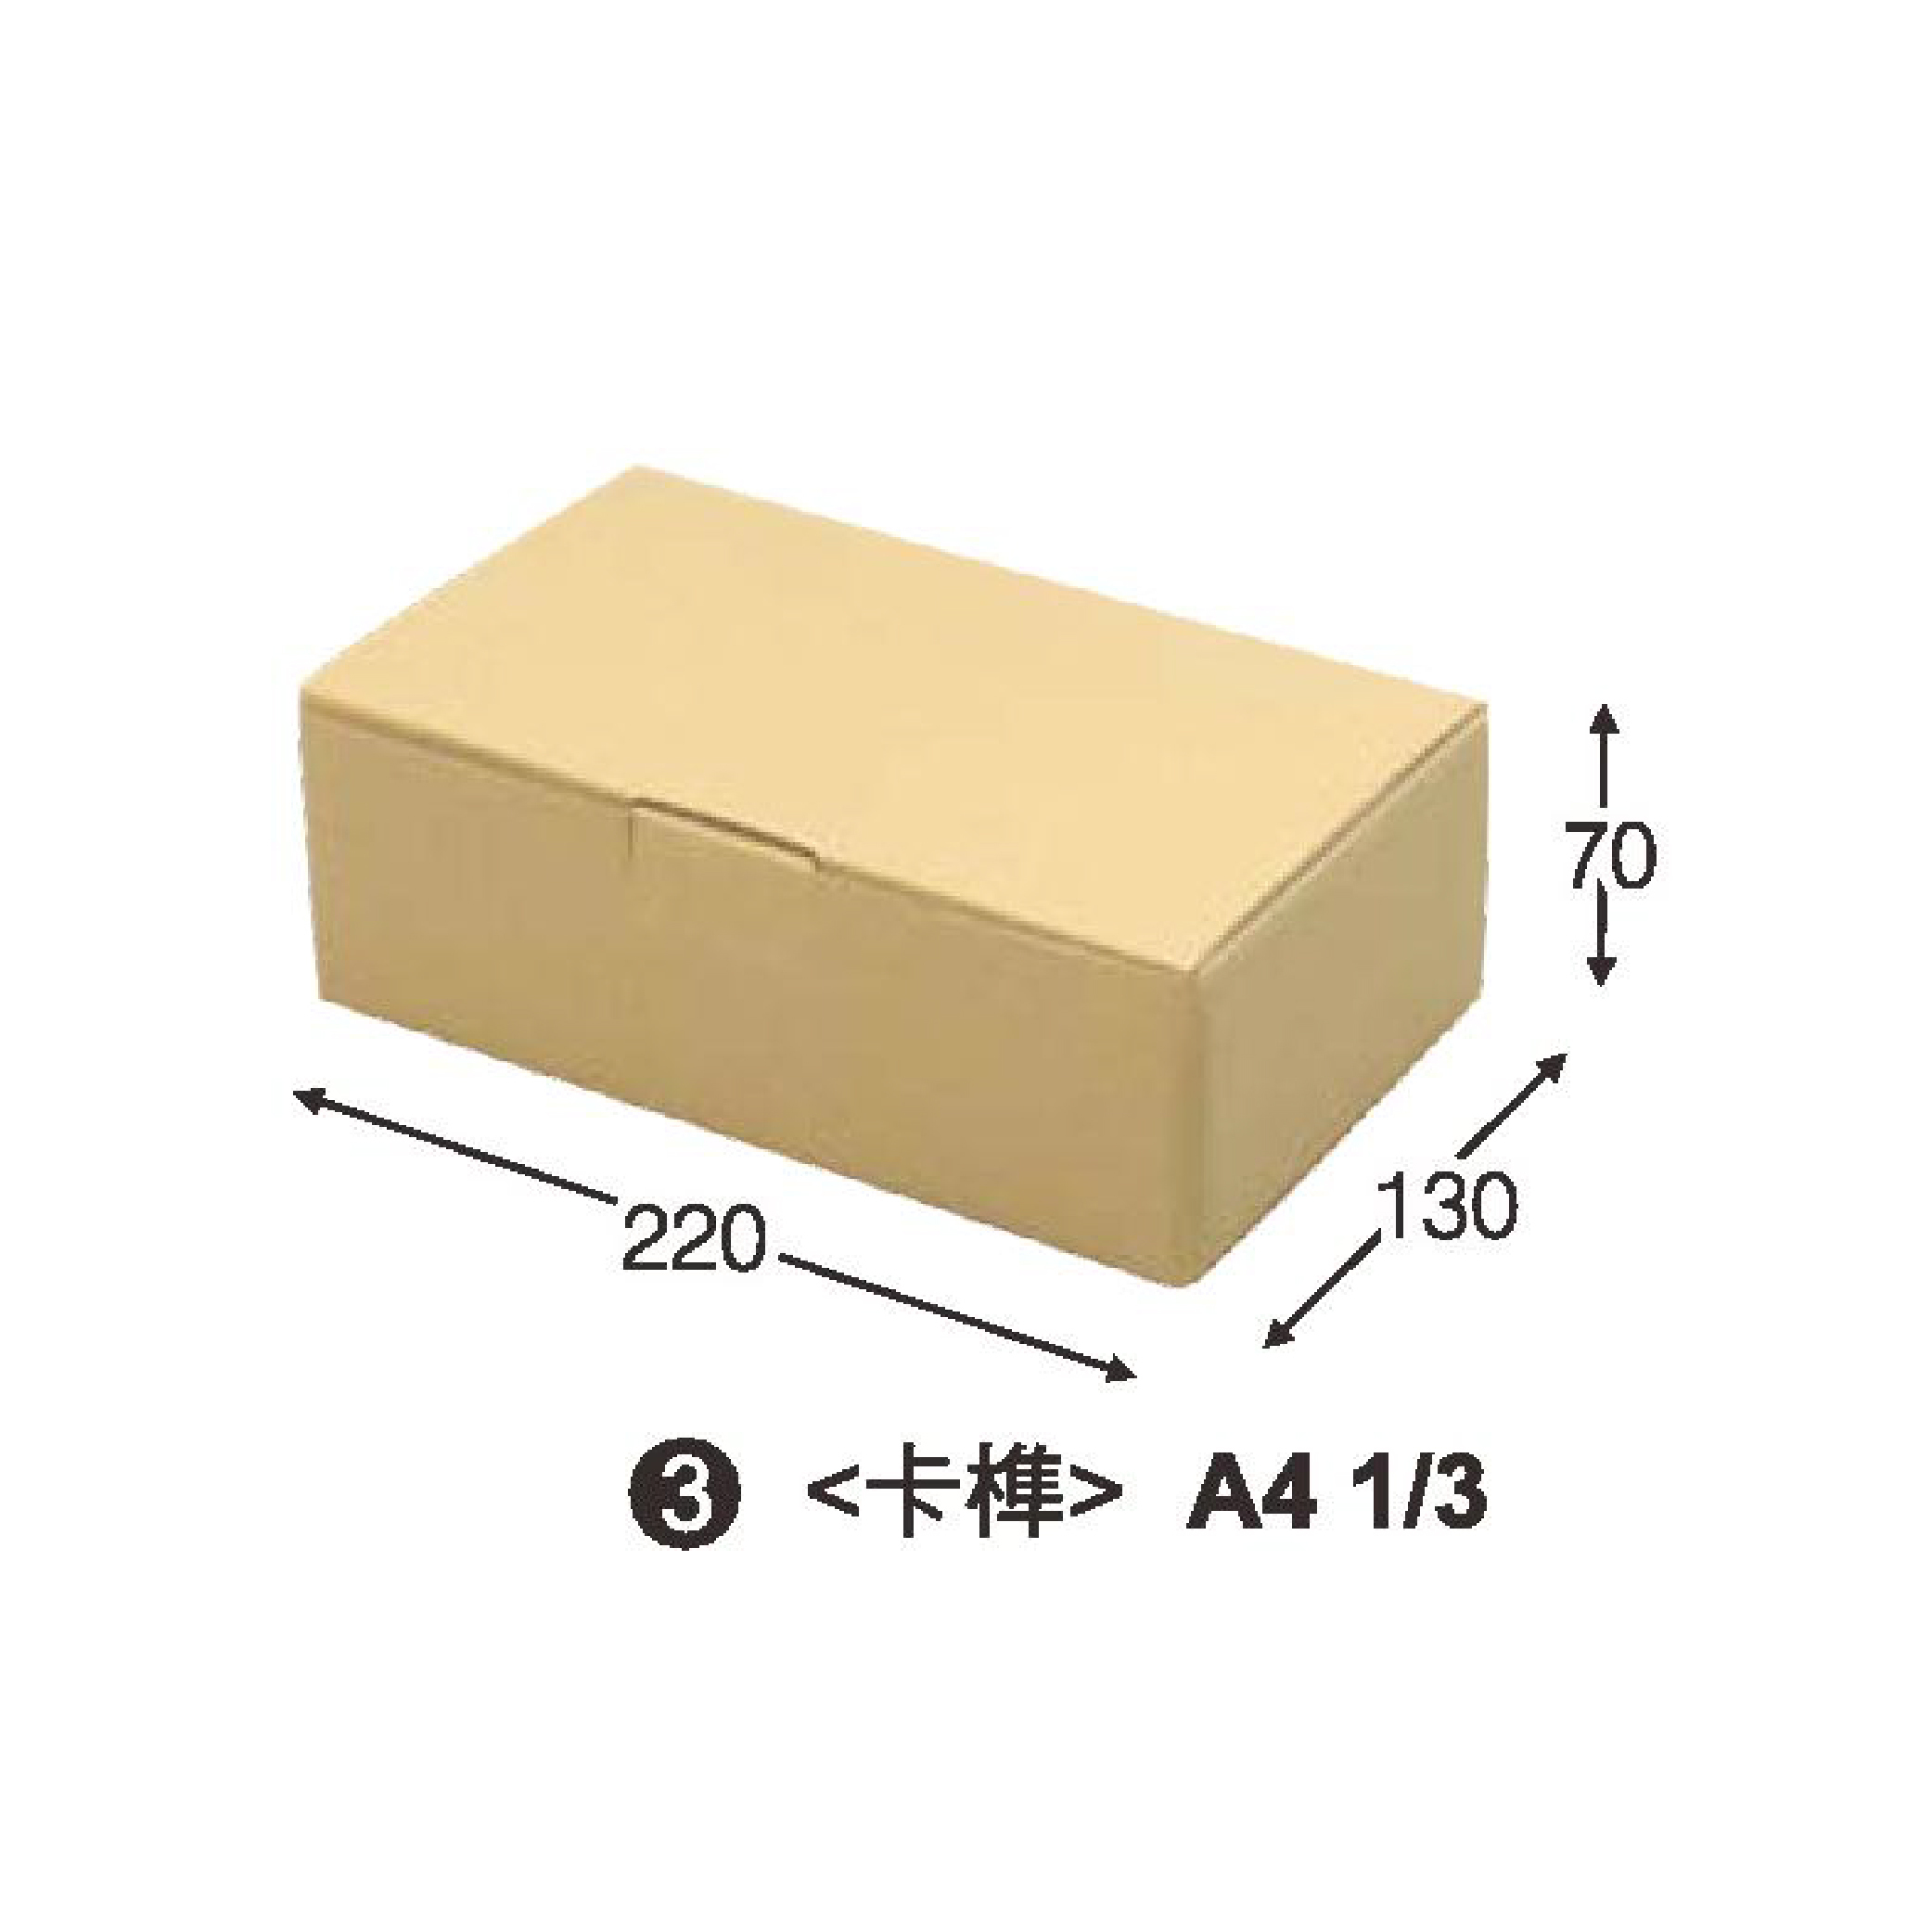 牛皮瓦楞紙盒B-05.jpg